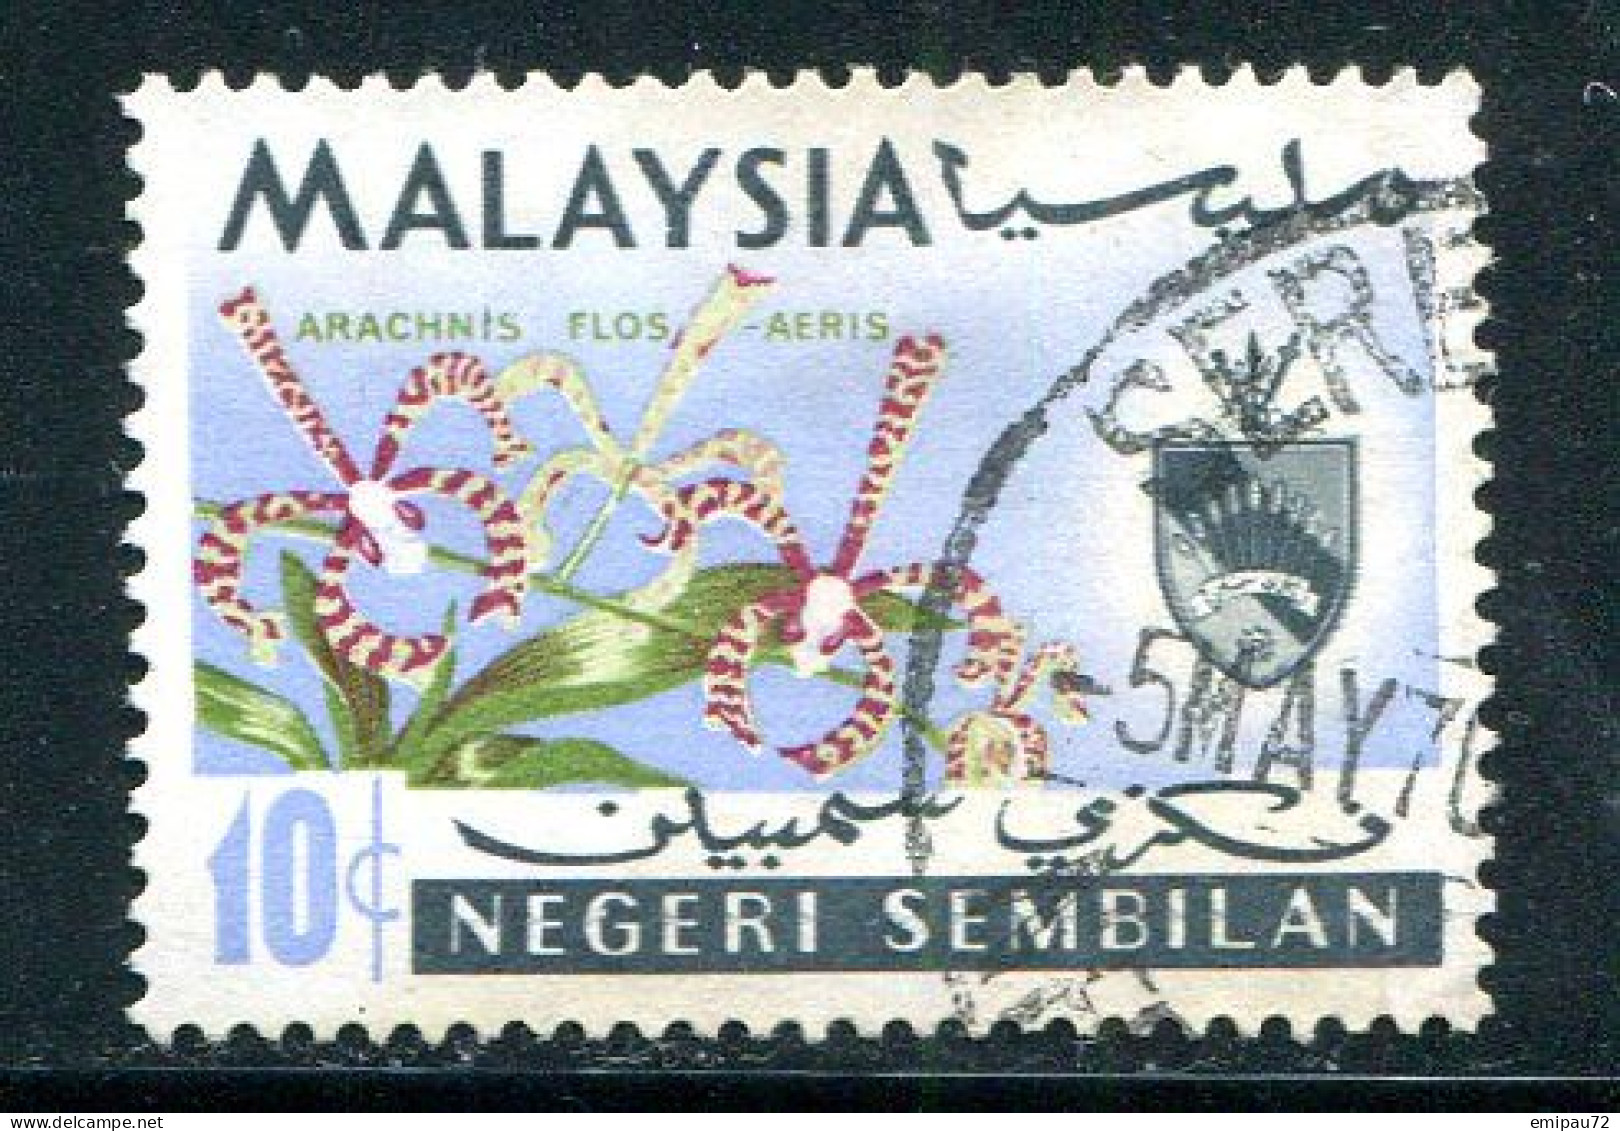 NEGRI SEMBILAN- Y&T N°77- Oblitéré - Negri Sembilan